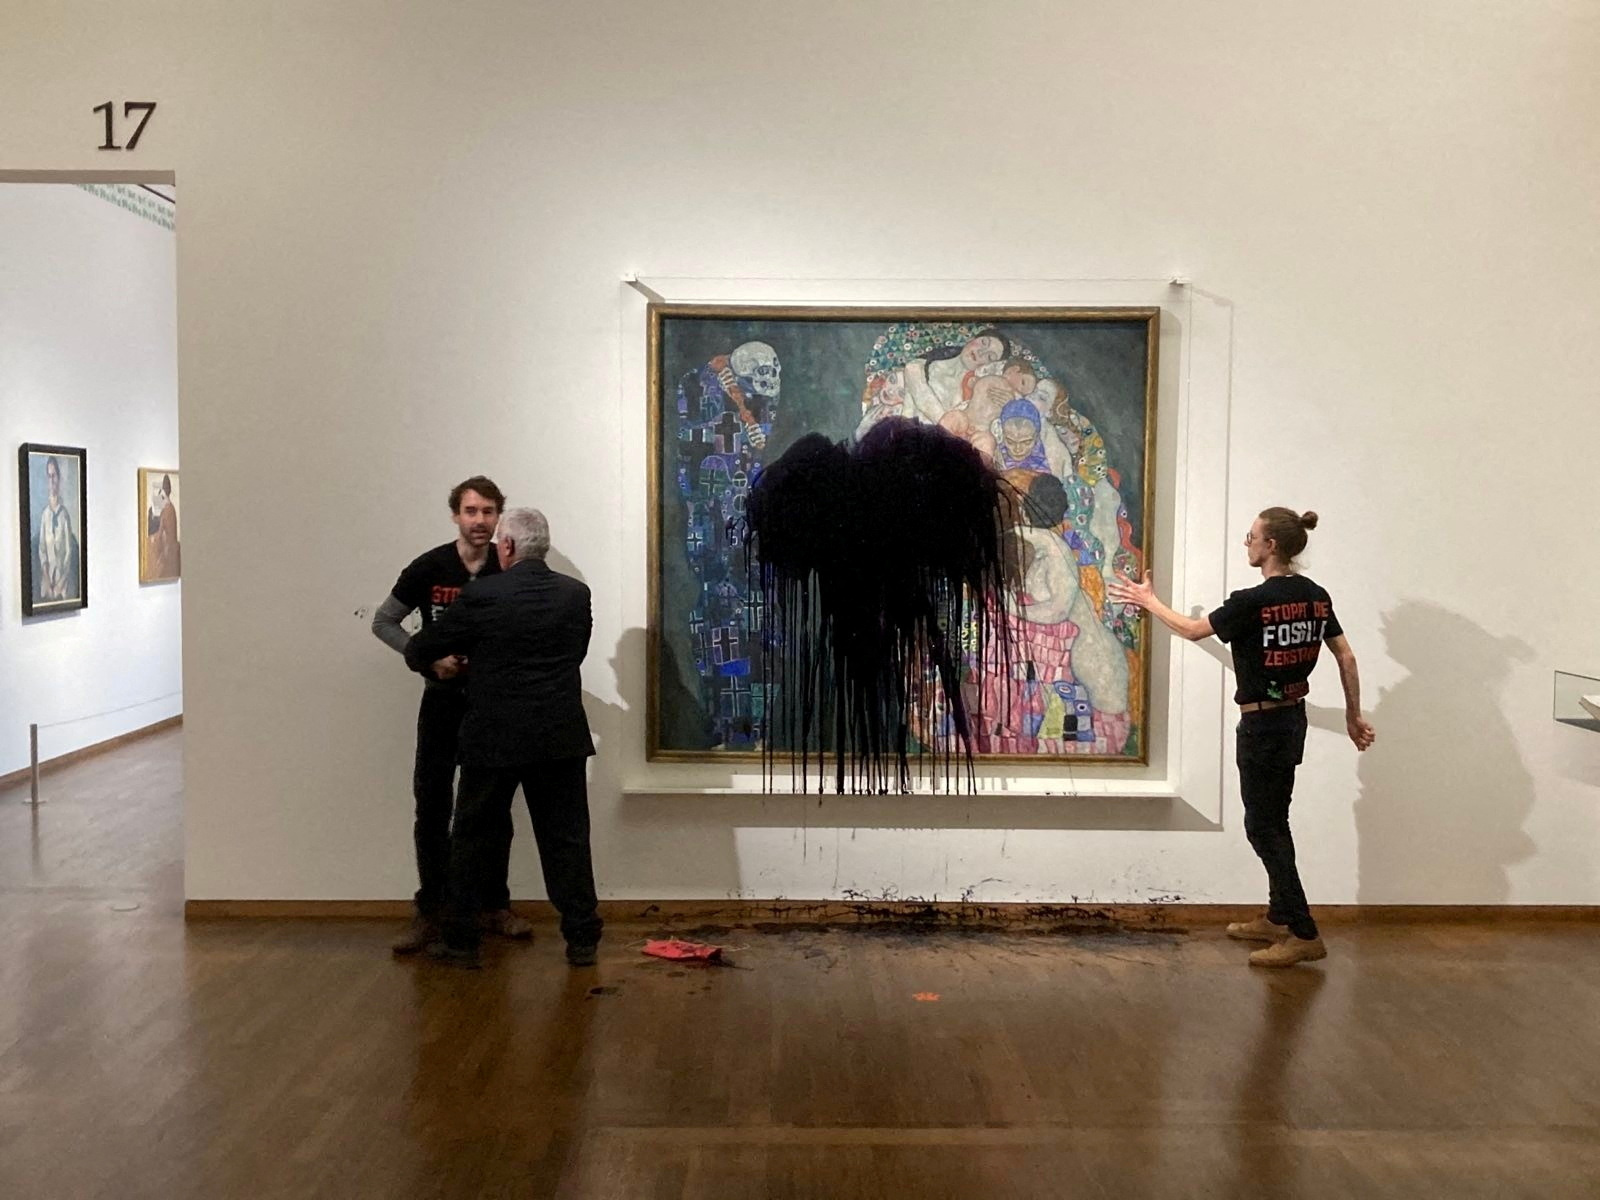 Activistas climáticos arrojaron un líquido negro a un cuadro de Klimt en un  museo de Viena - Infobae